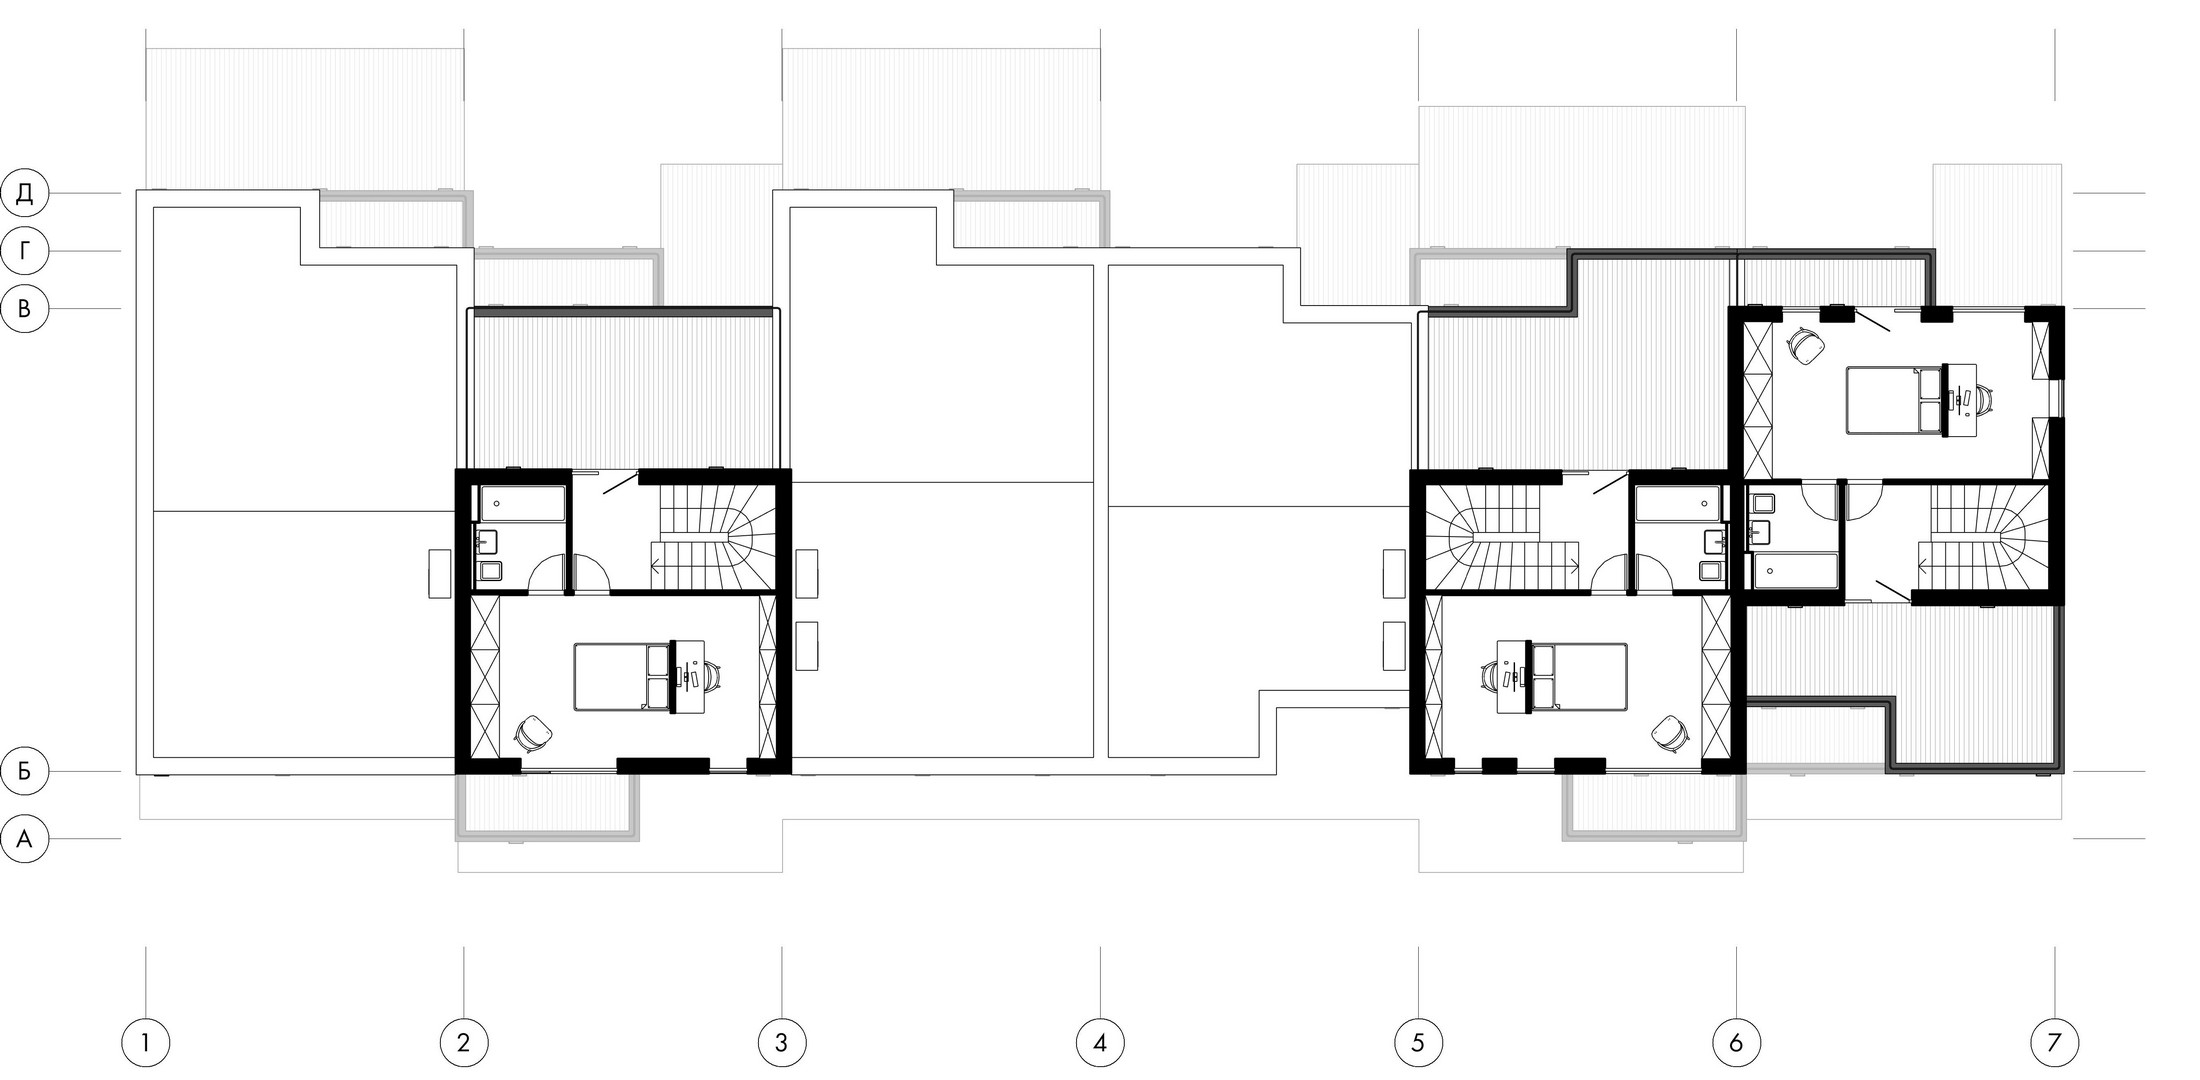 3rd floor plan